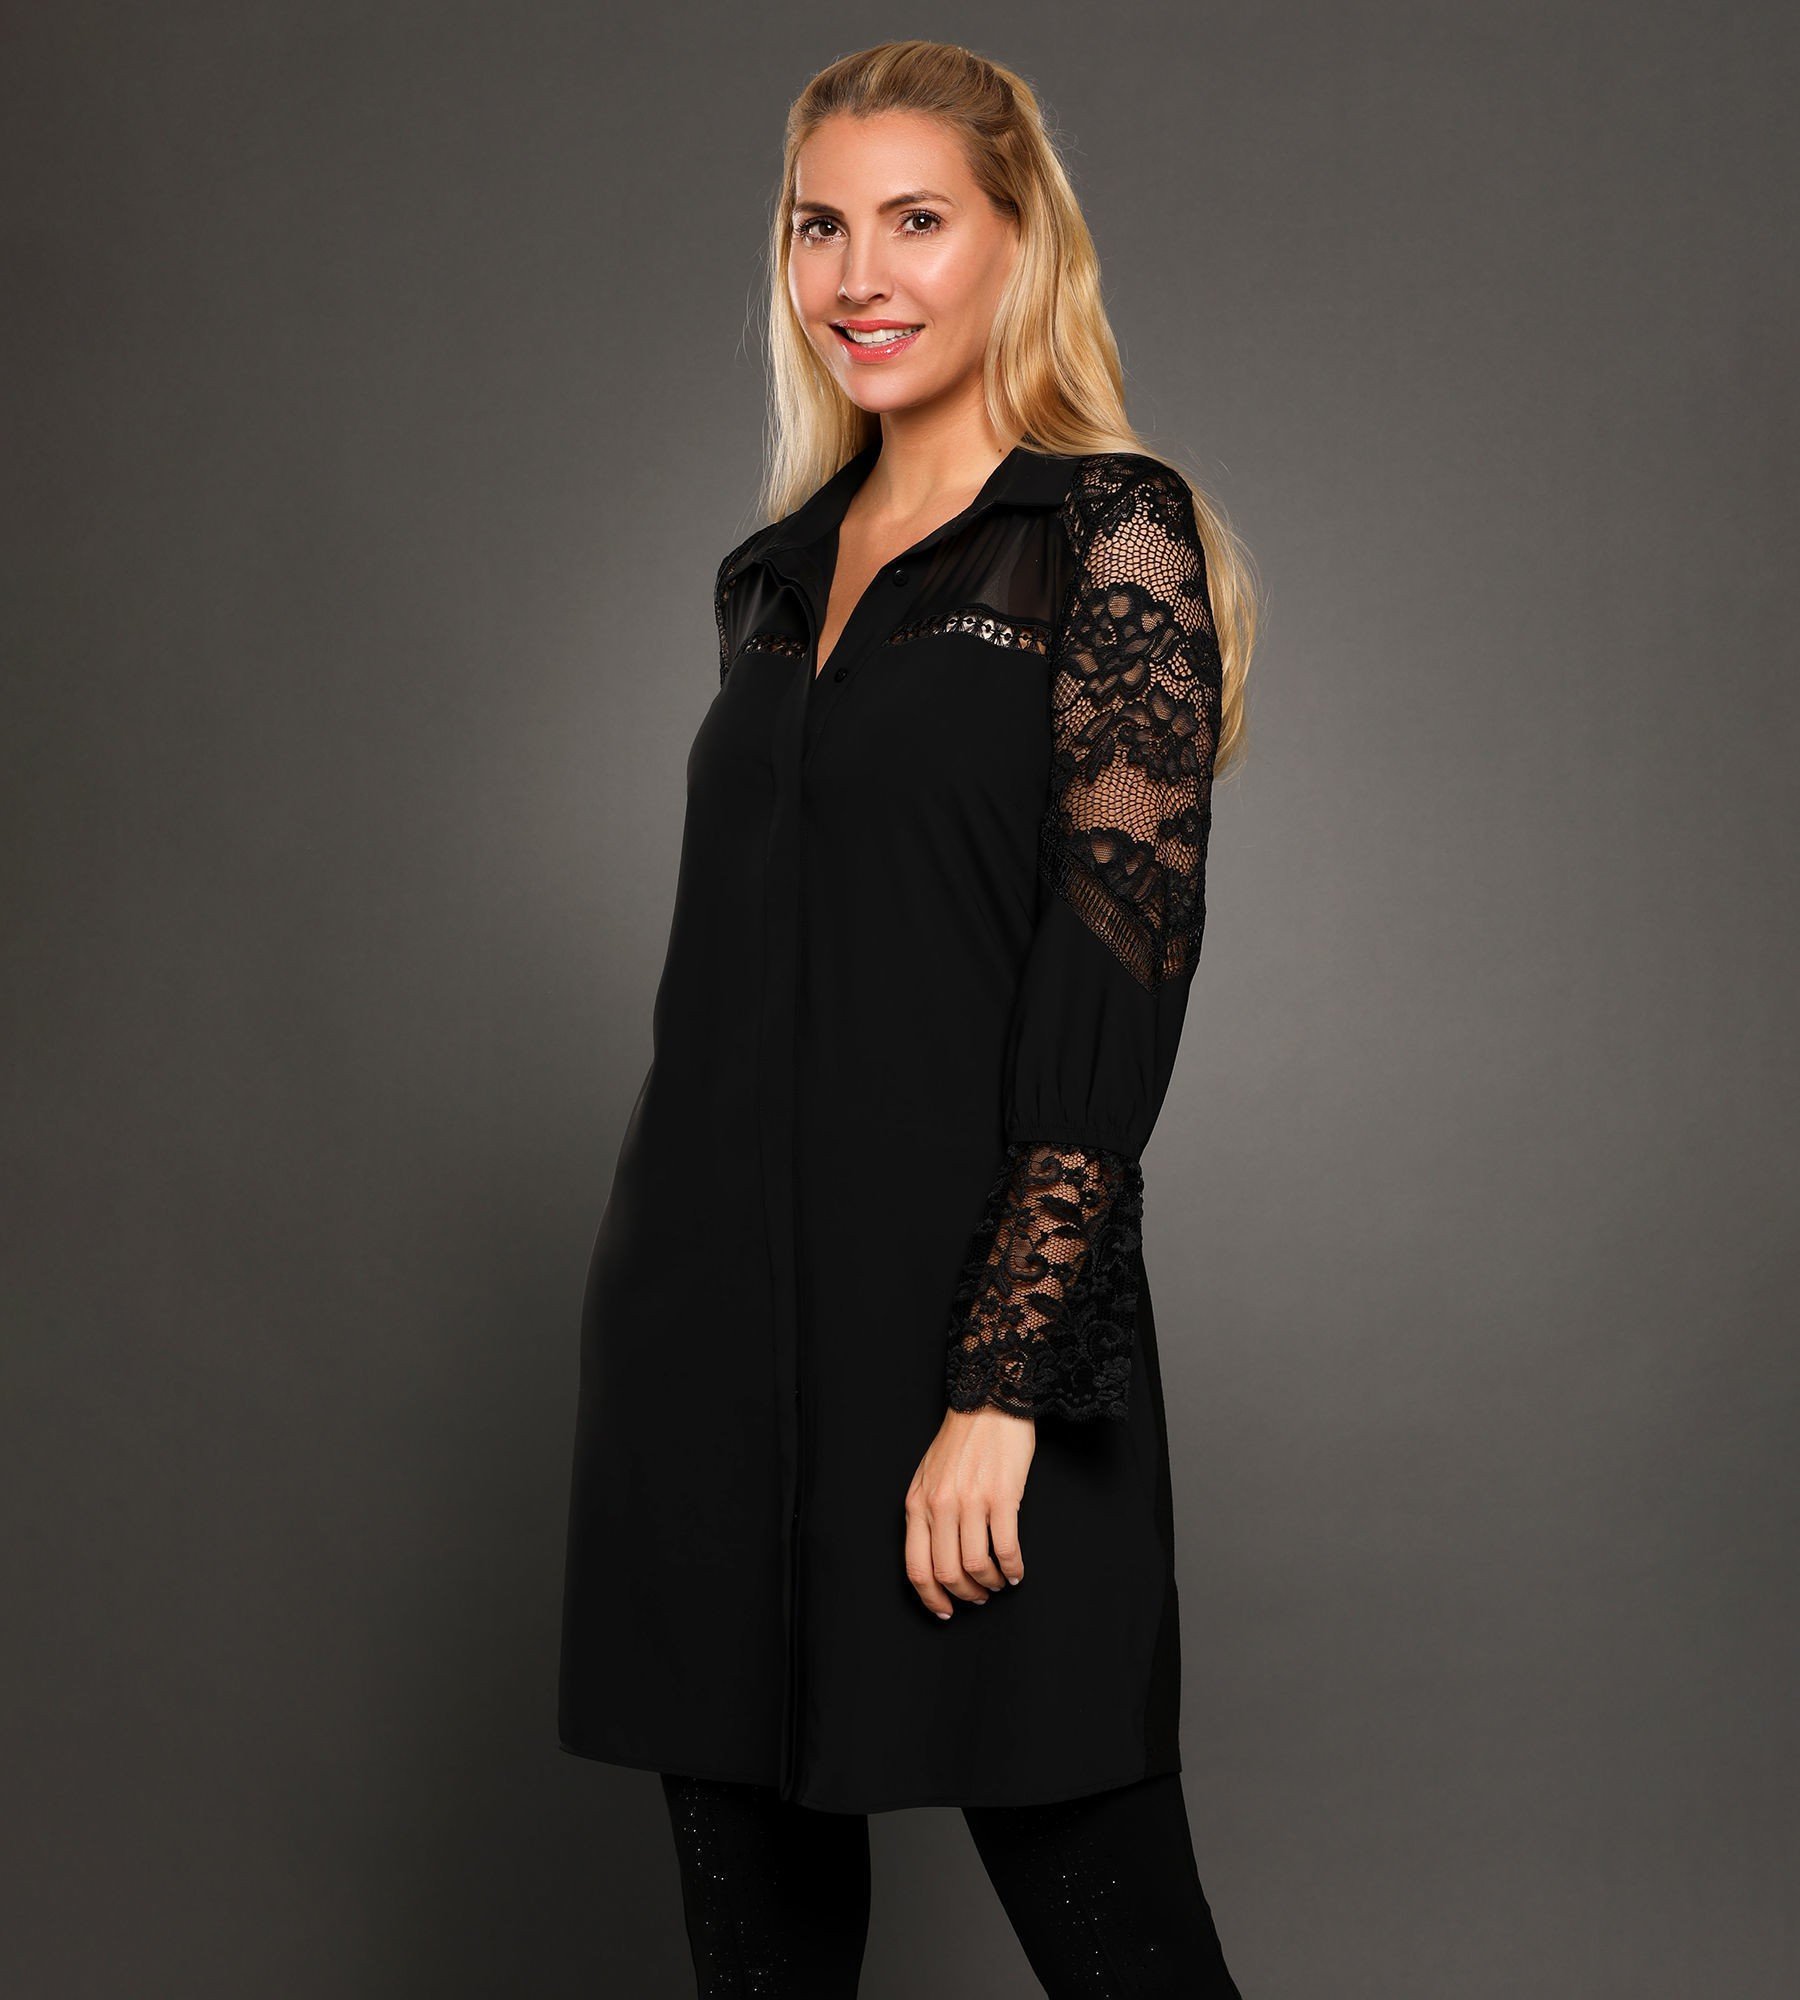 Longbluse Lacey mit Spitze - Alle Produkte ansehen - Fashion - Sarah Kern -  Marken